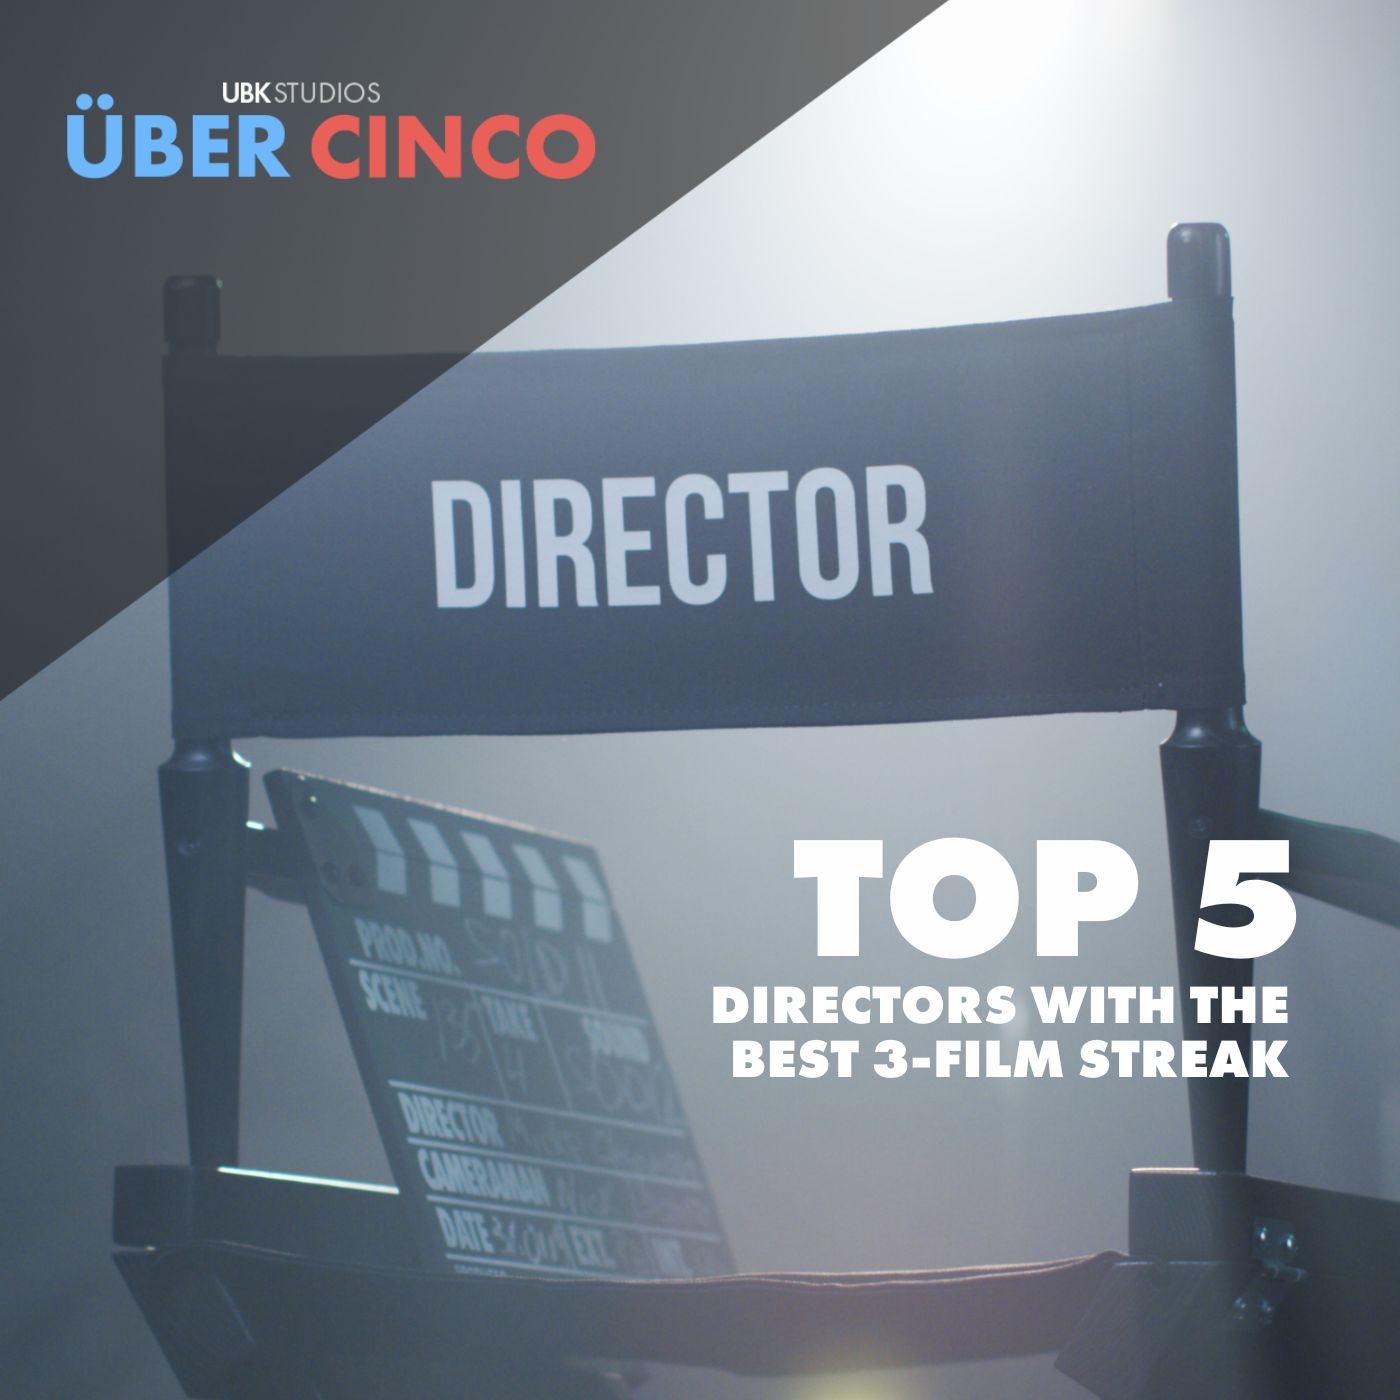 Top 5 Directors with the Best 3-Film Streak Image